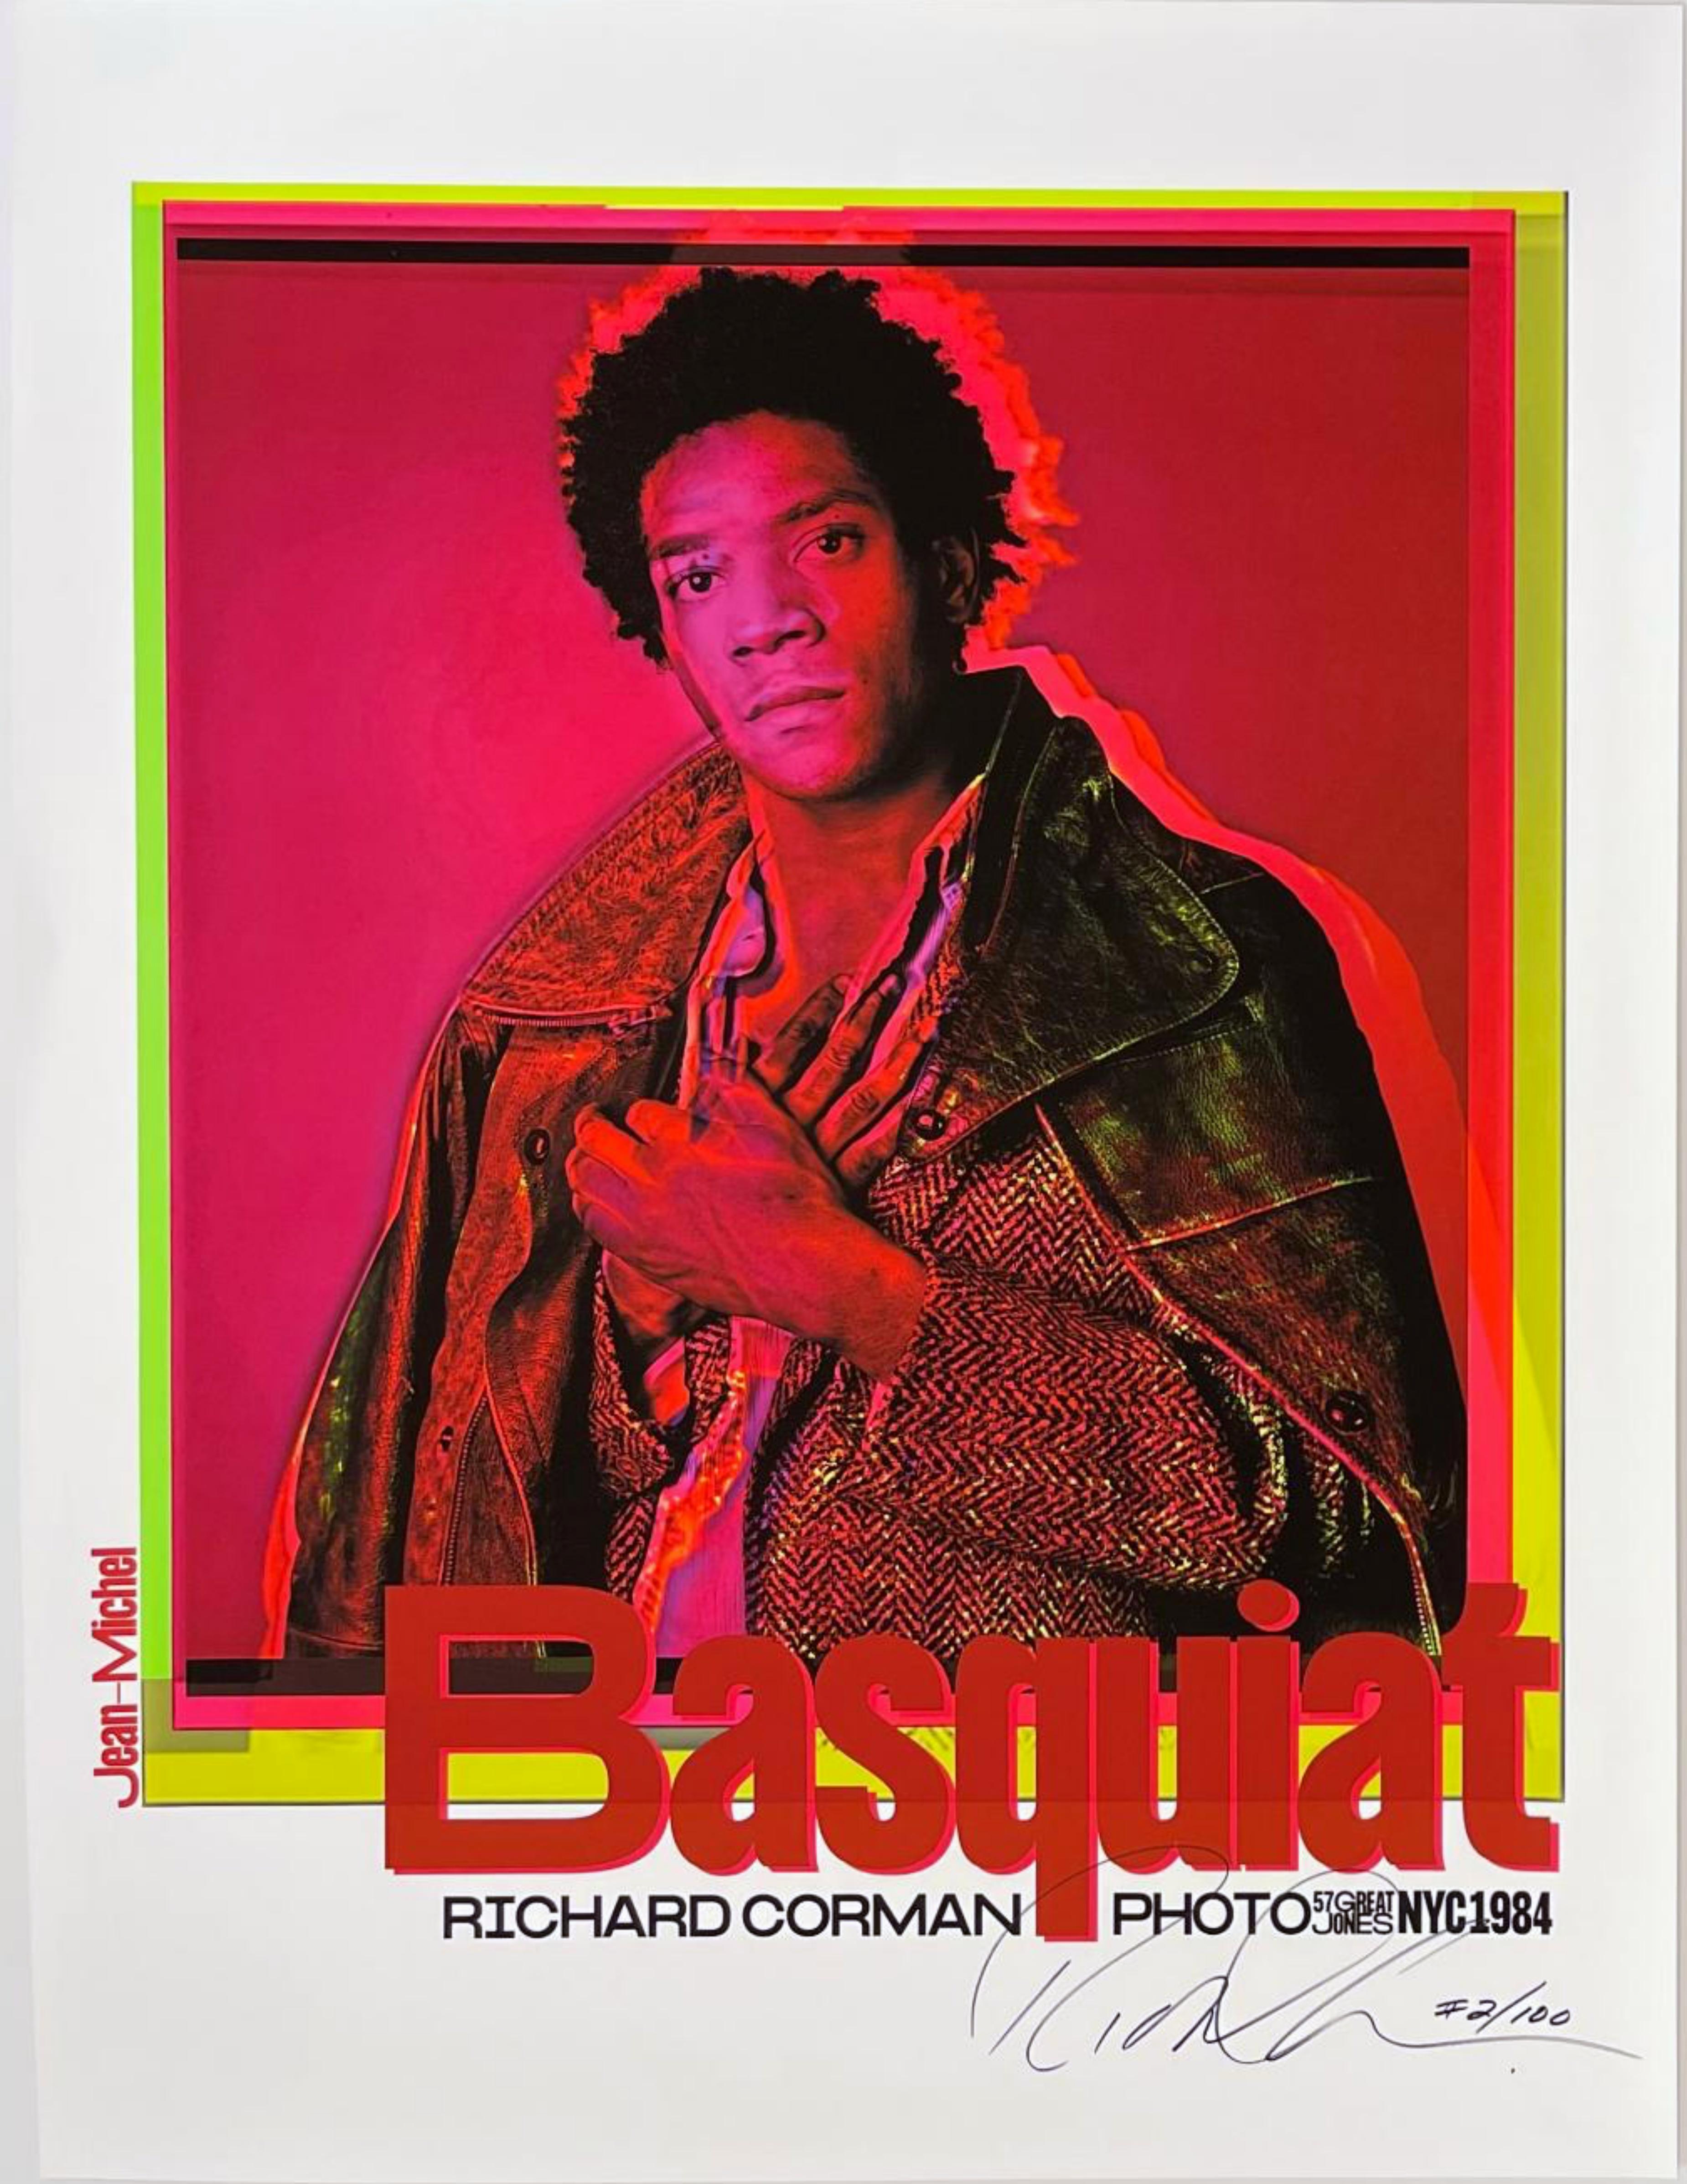 Richard Corman
Jean-Michel Basquiat 1984 (rouge), 2020
Affiche lithographique offset sur papier pigmentaire d'archivage couleur
Signé et numéroté 2/100 par Richard Corman à l'aide d'un sharpie argenté au recto.
32 × 24 pouces
Non encadré
Cette